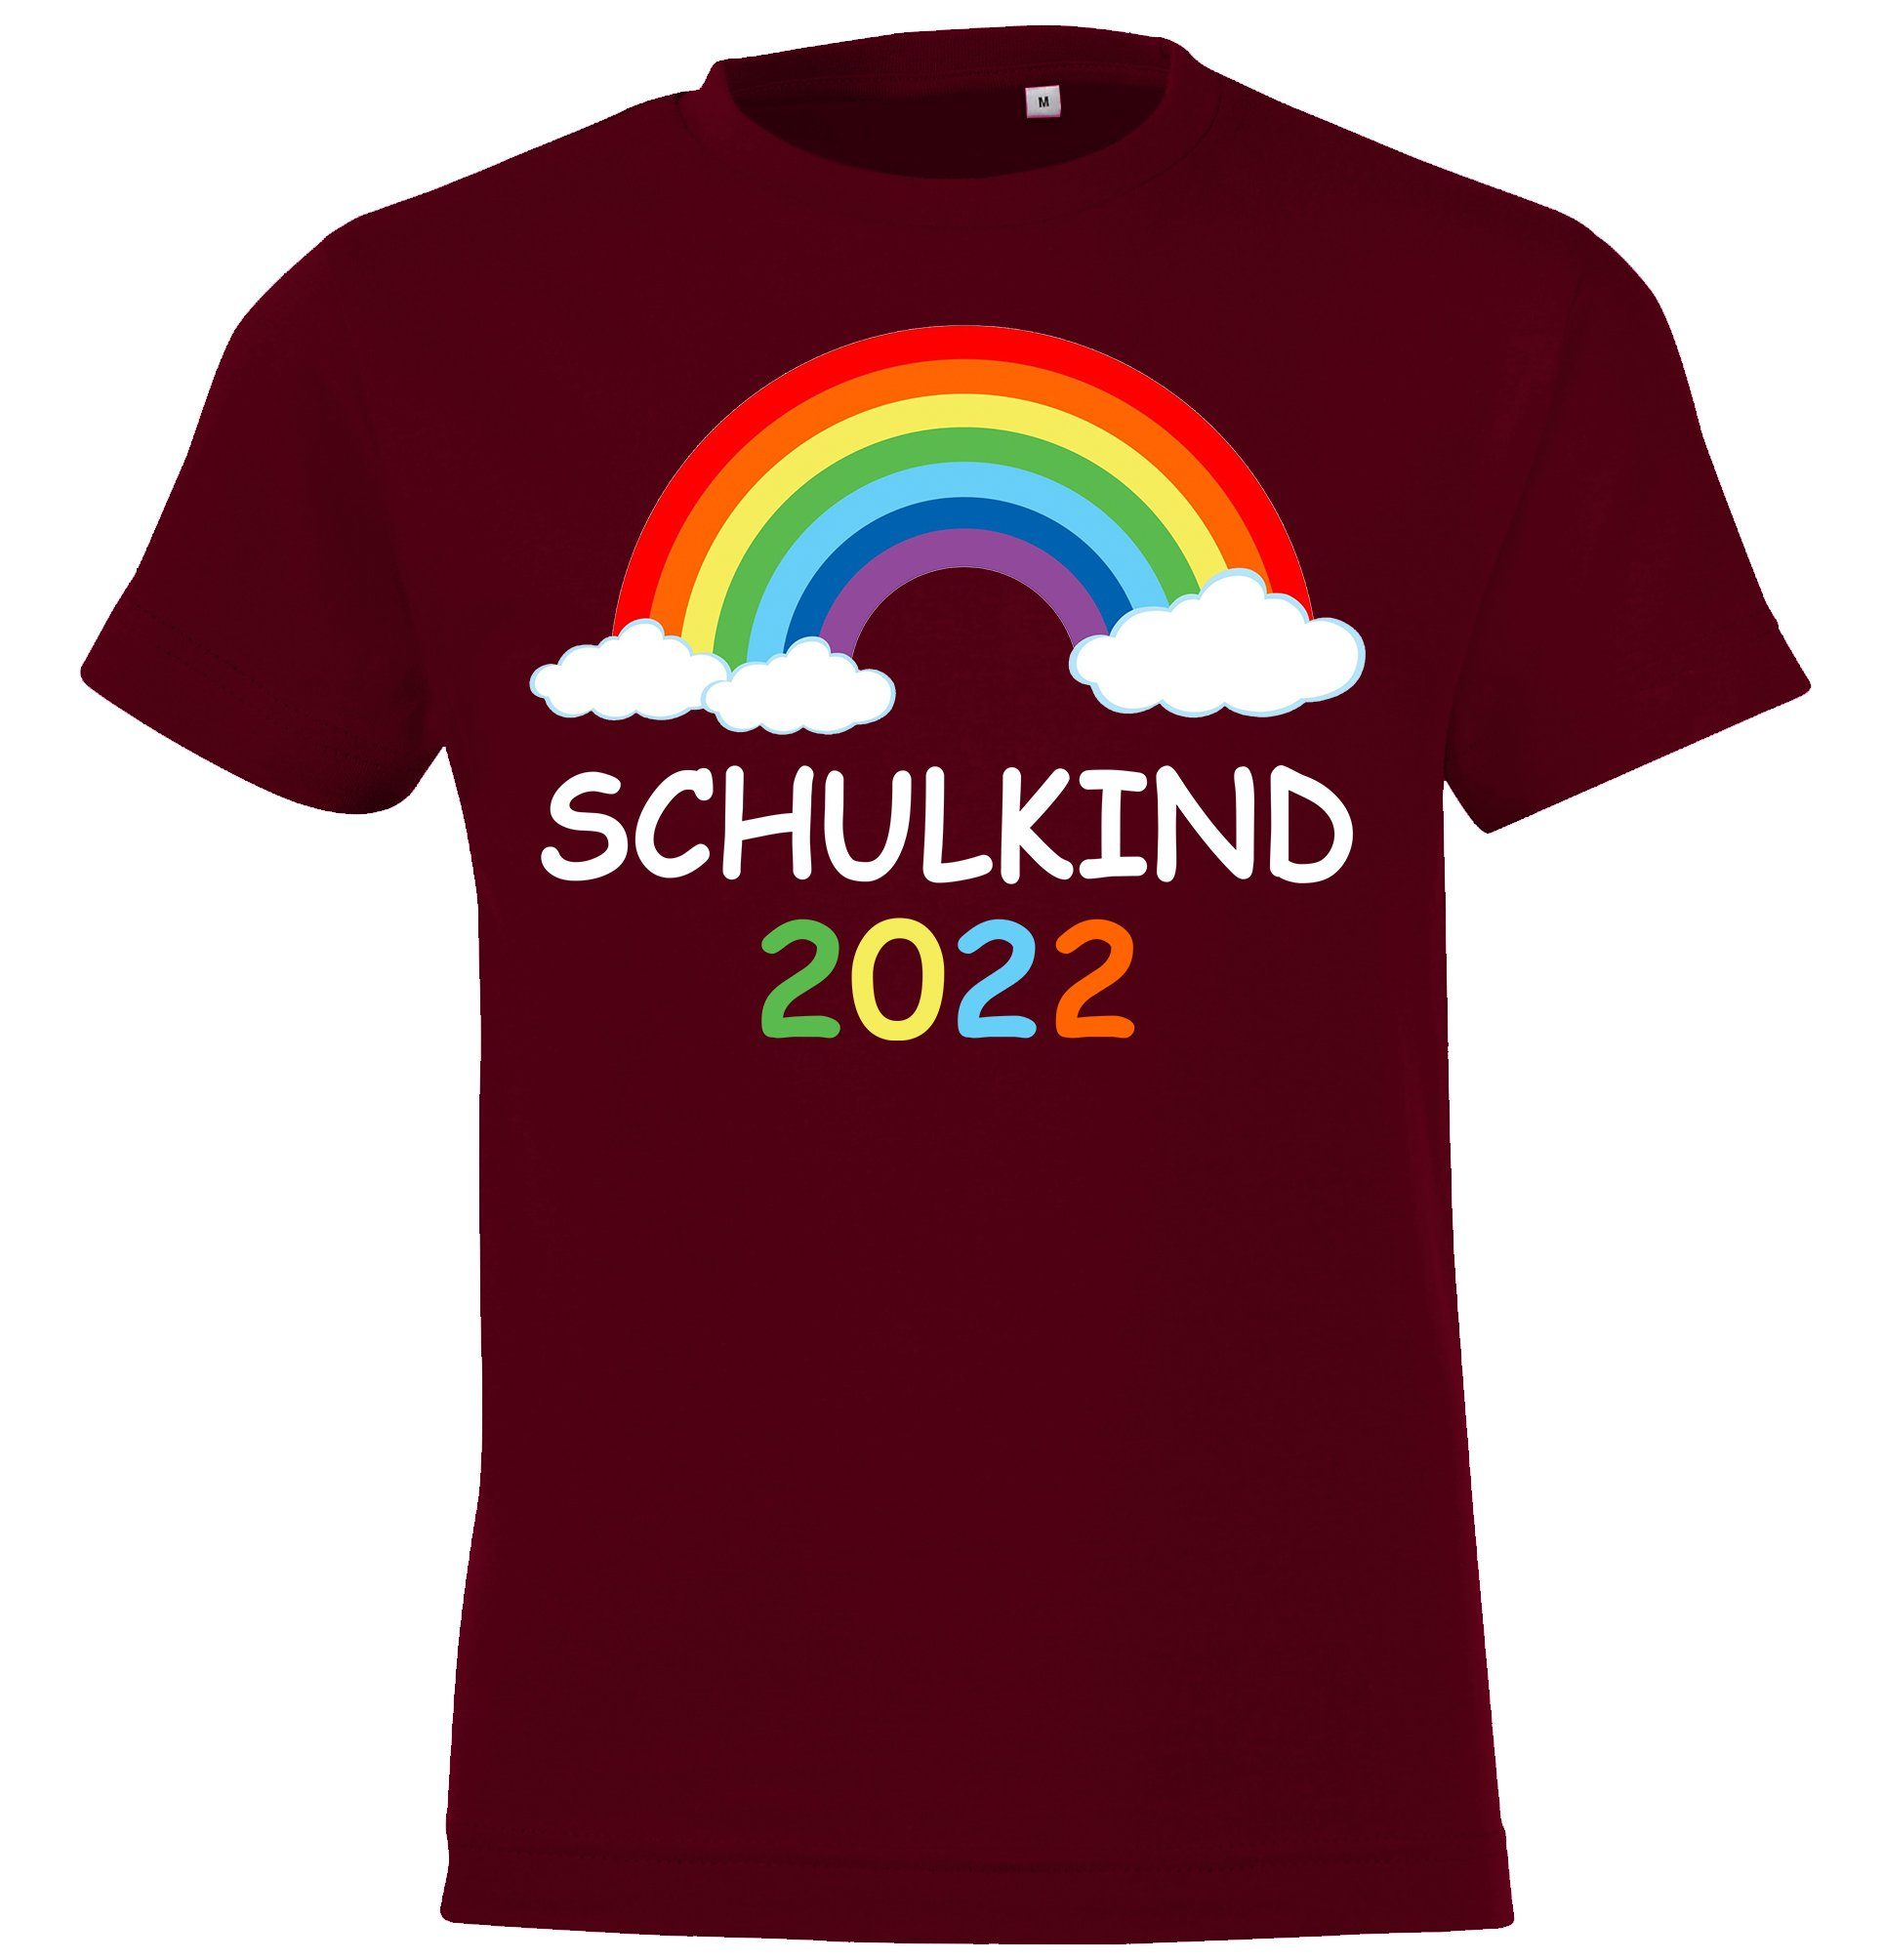 Schulkind T-Shirt Designz Burgund süßem mit Kinder Frontaufdruck Regenbogen 2022 Shirt Youth